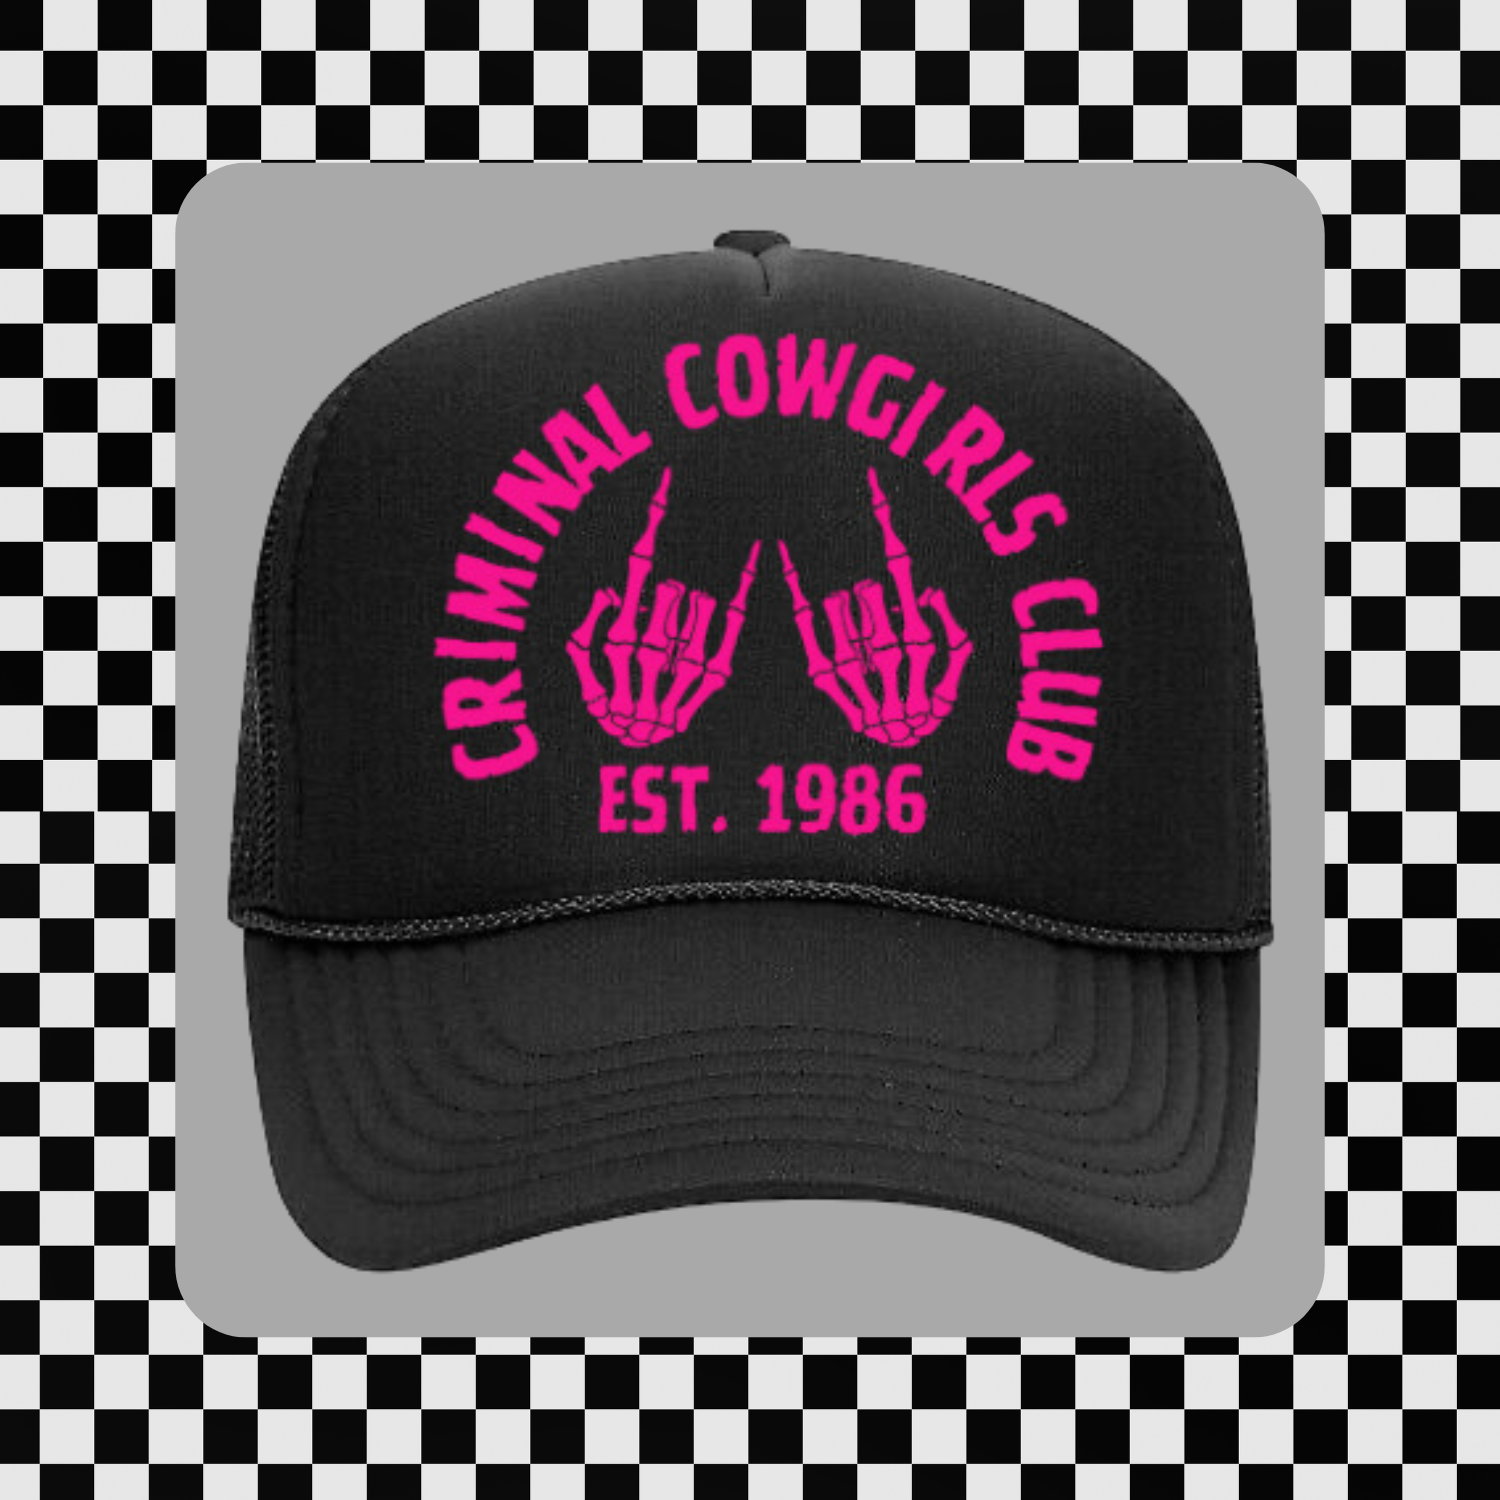 Criminal Cowgirls Club Trucker